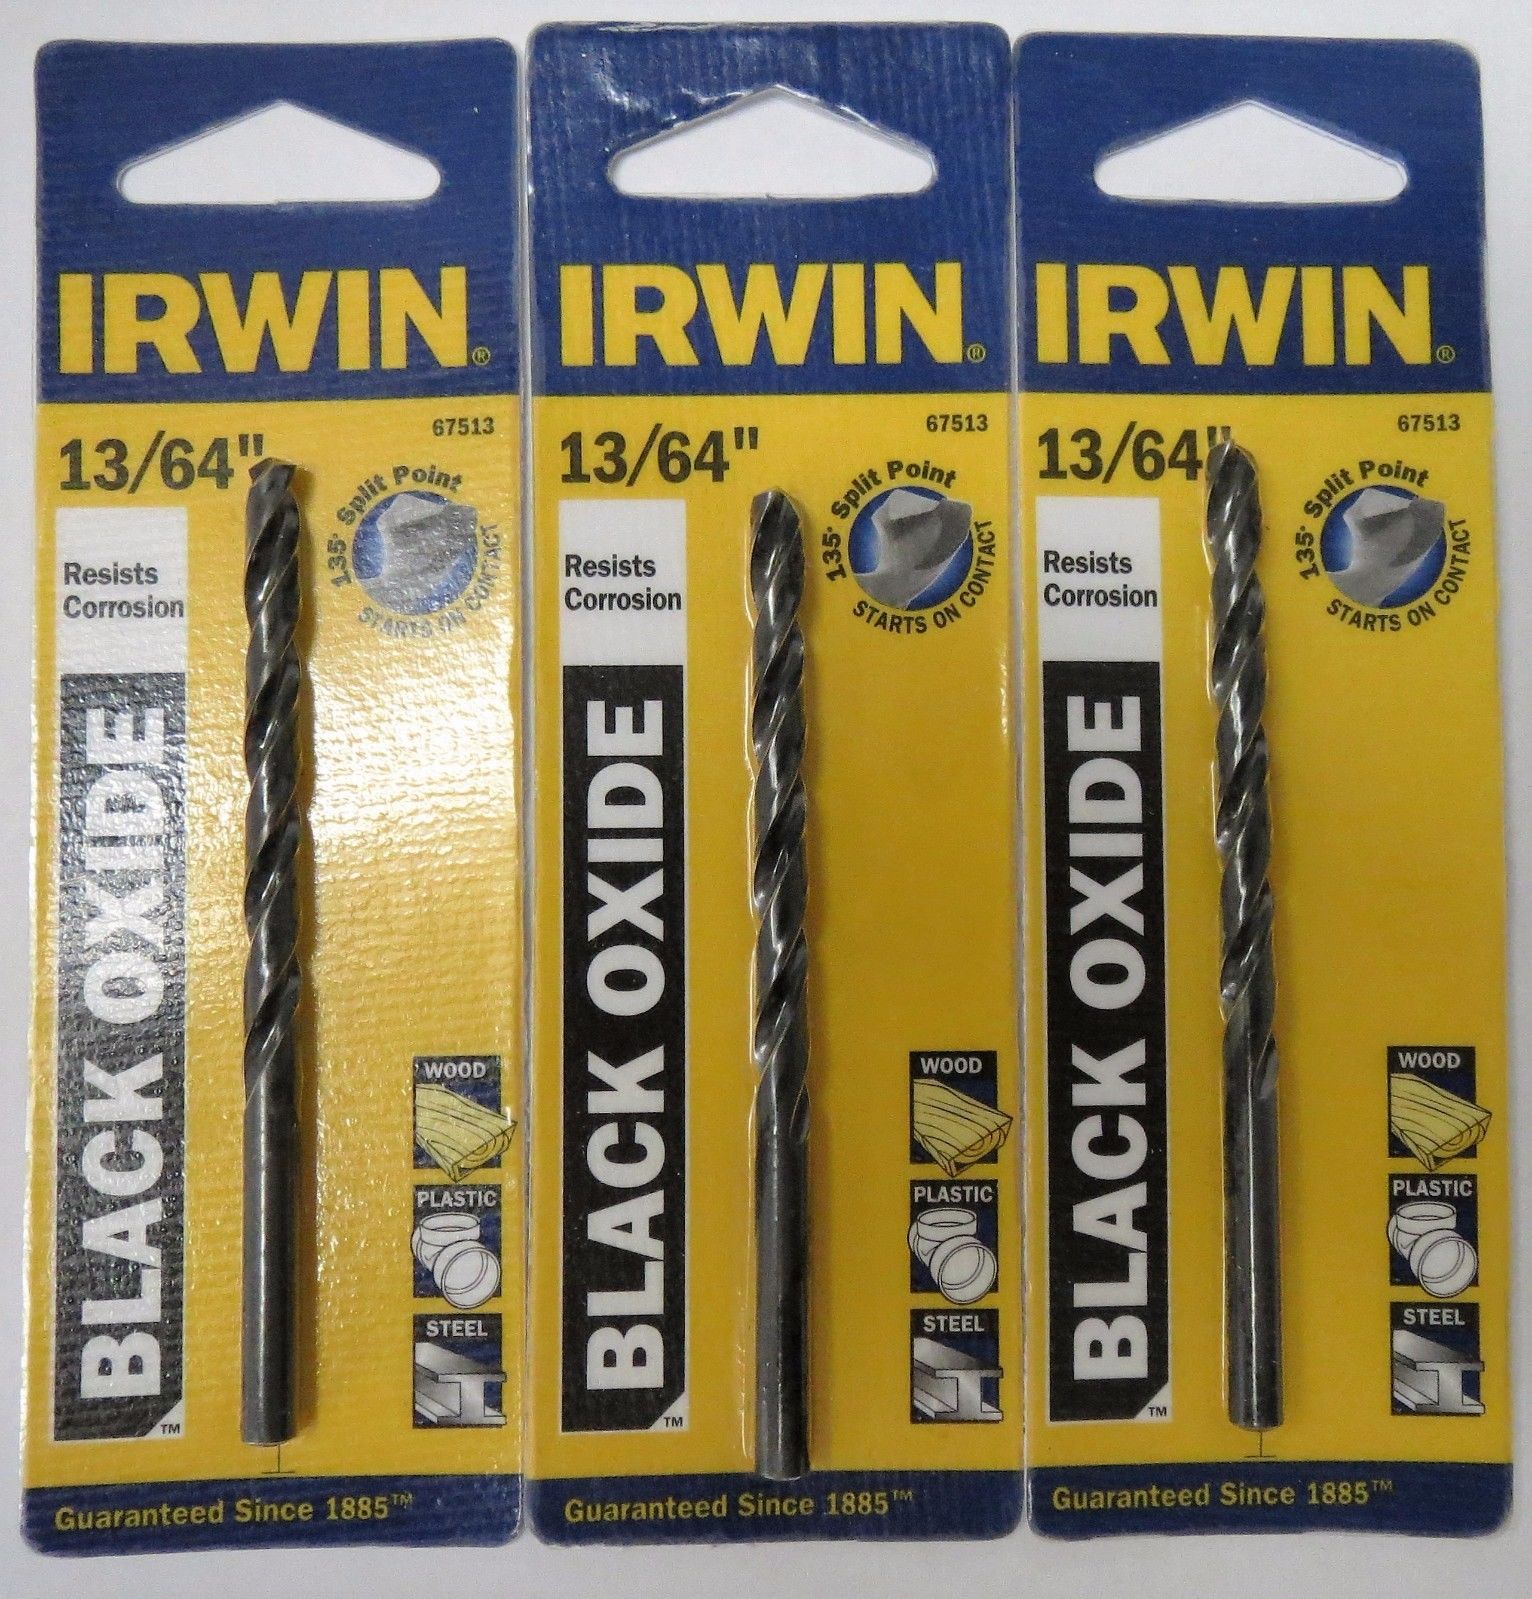 Irwin 67513 13/64" Black Oxide Drill Bit (3pcs)